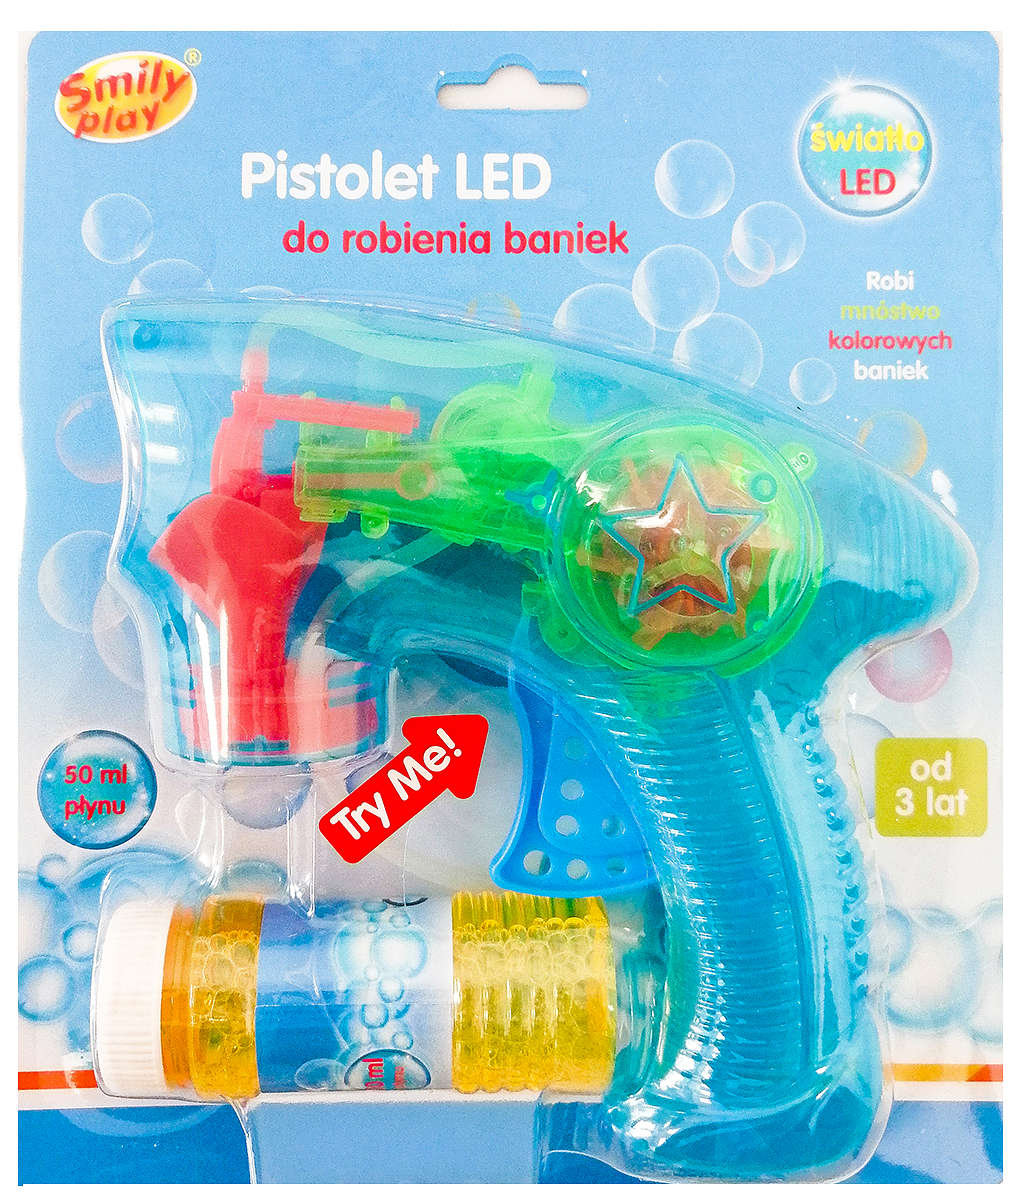 Фото - Інші іграшки Smily Play , Niebieski pistolet do baniek mydlanych z płynem światełka LED 